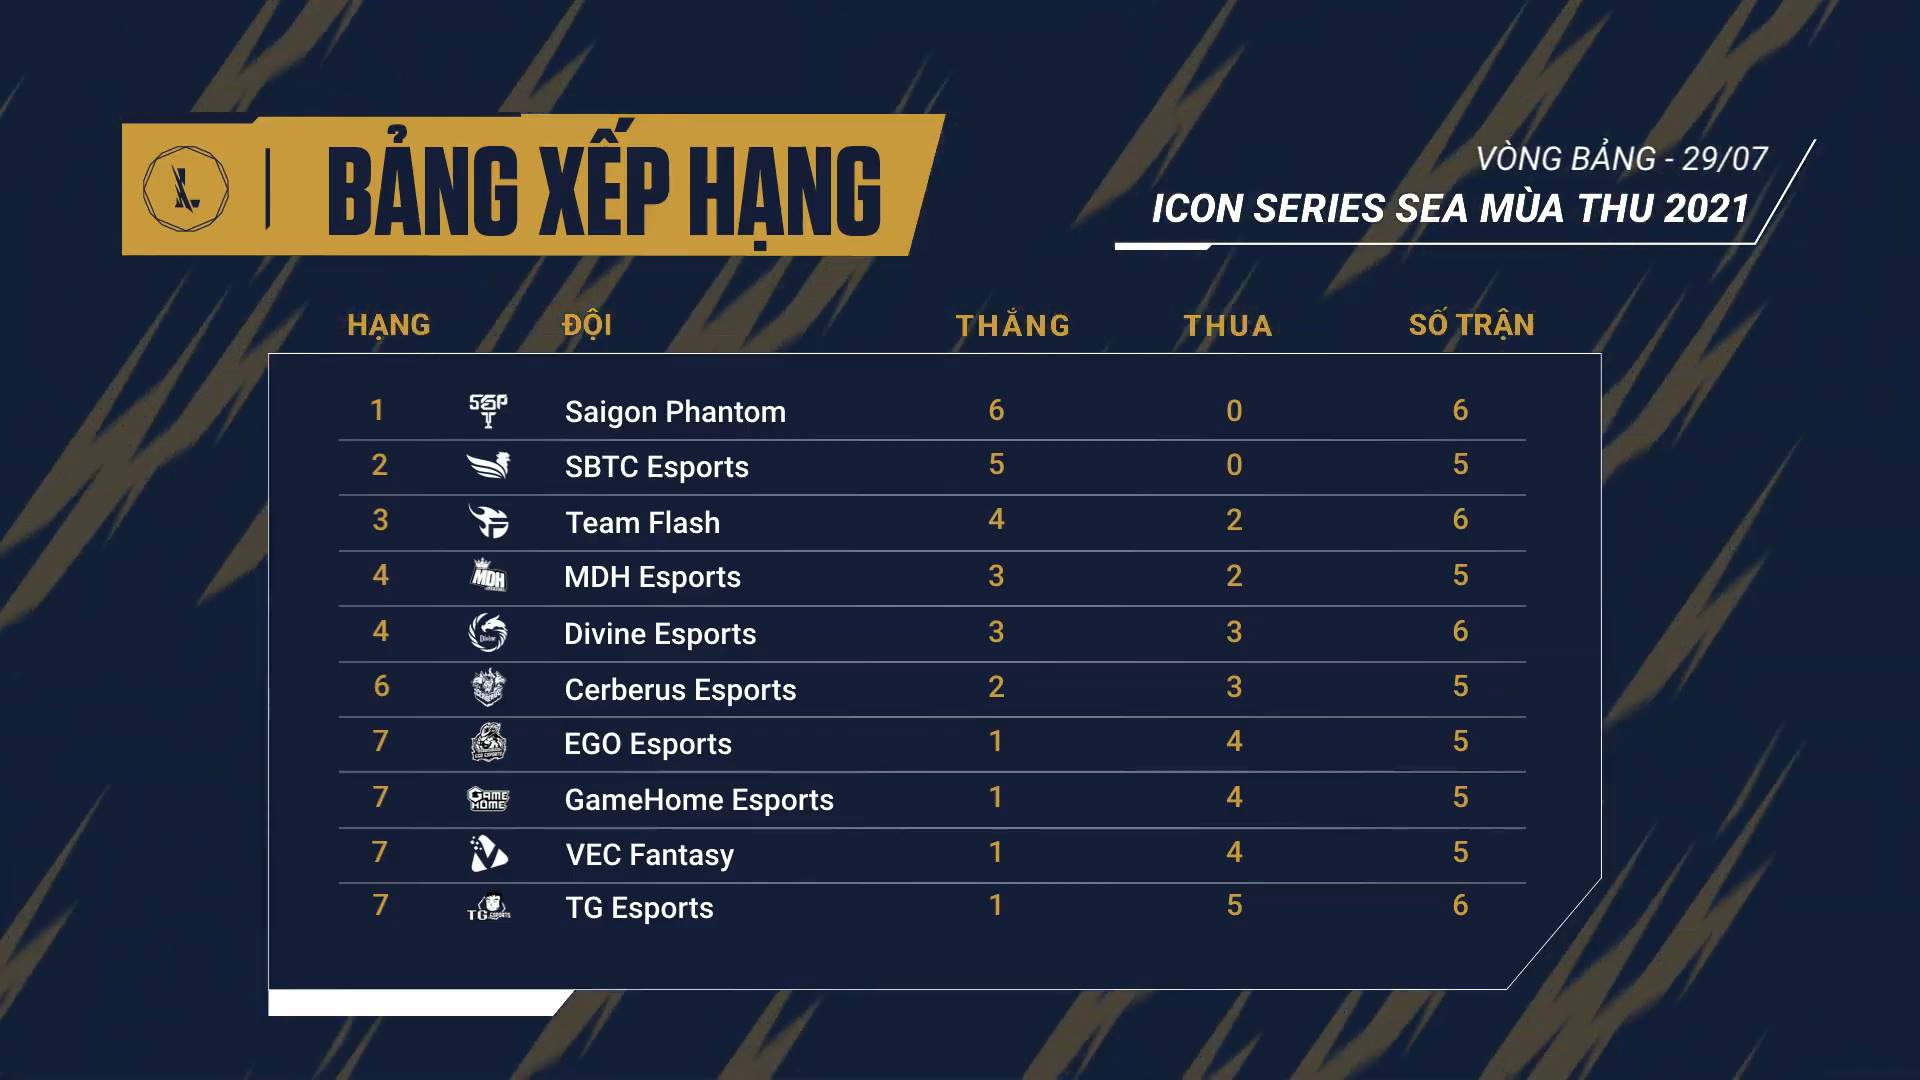 Kết quả Icon Series SEA mùa Thu 2021 ngày 1 tuần 3: Team Flash thất bại trước Saigon Phantom - Ảnh 1